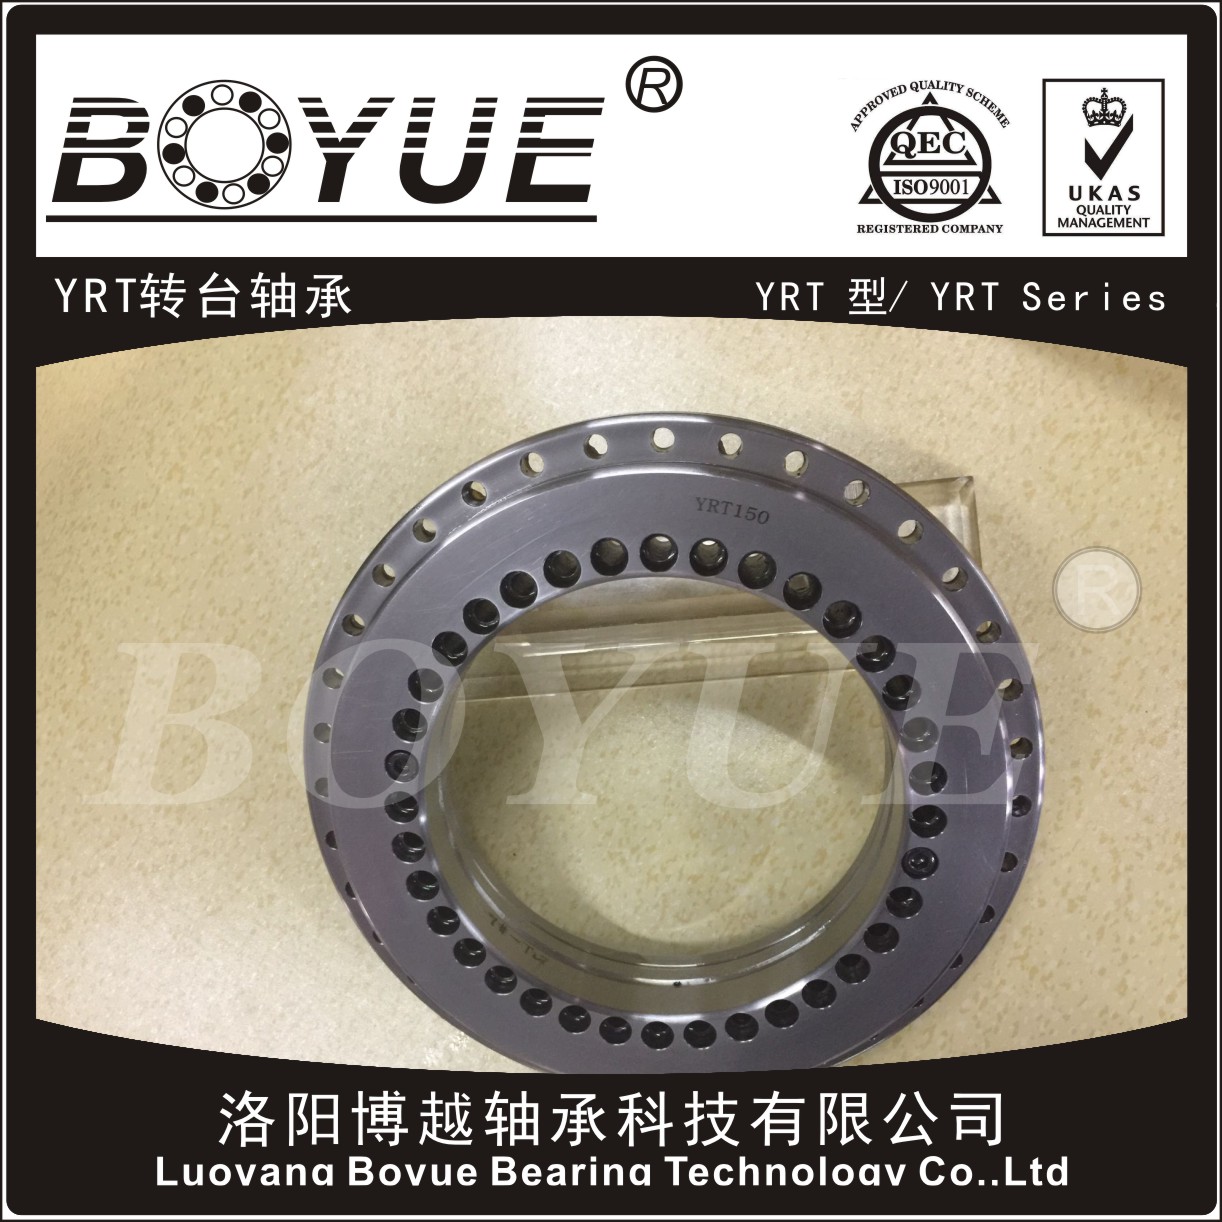 BOYUE博越生产的转台轴承应用于数控机床研磨设备精密仪器设备